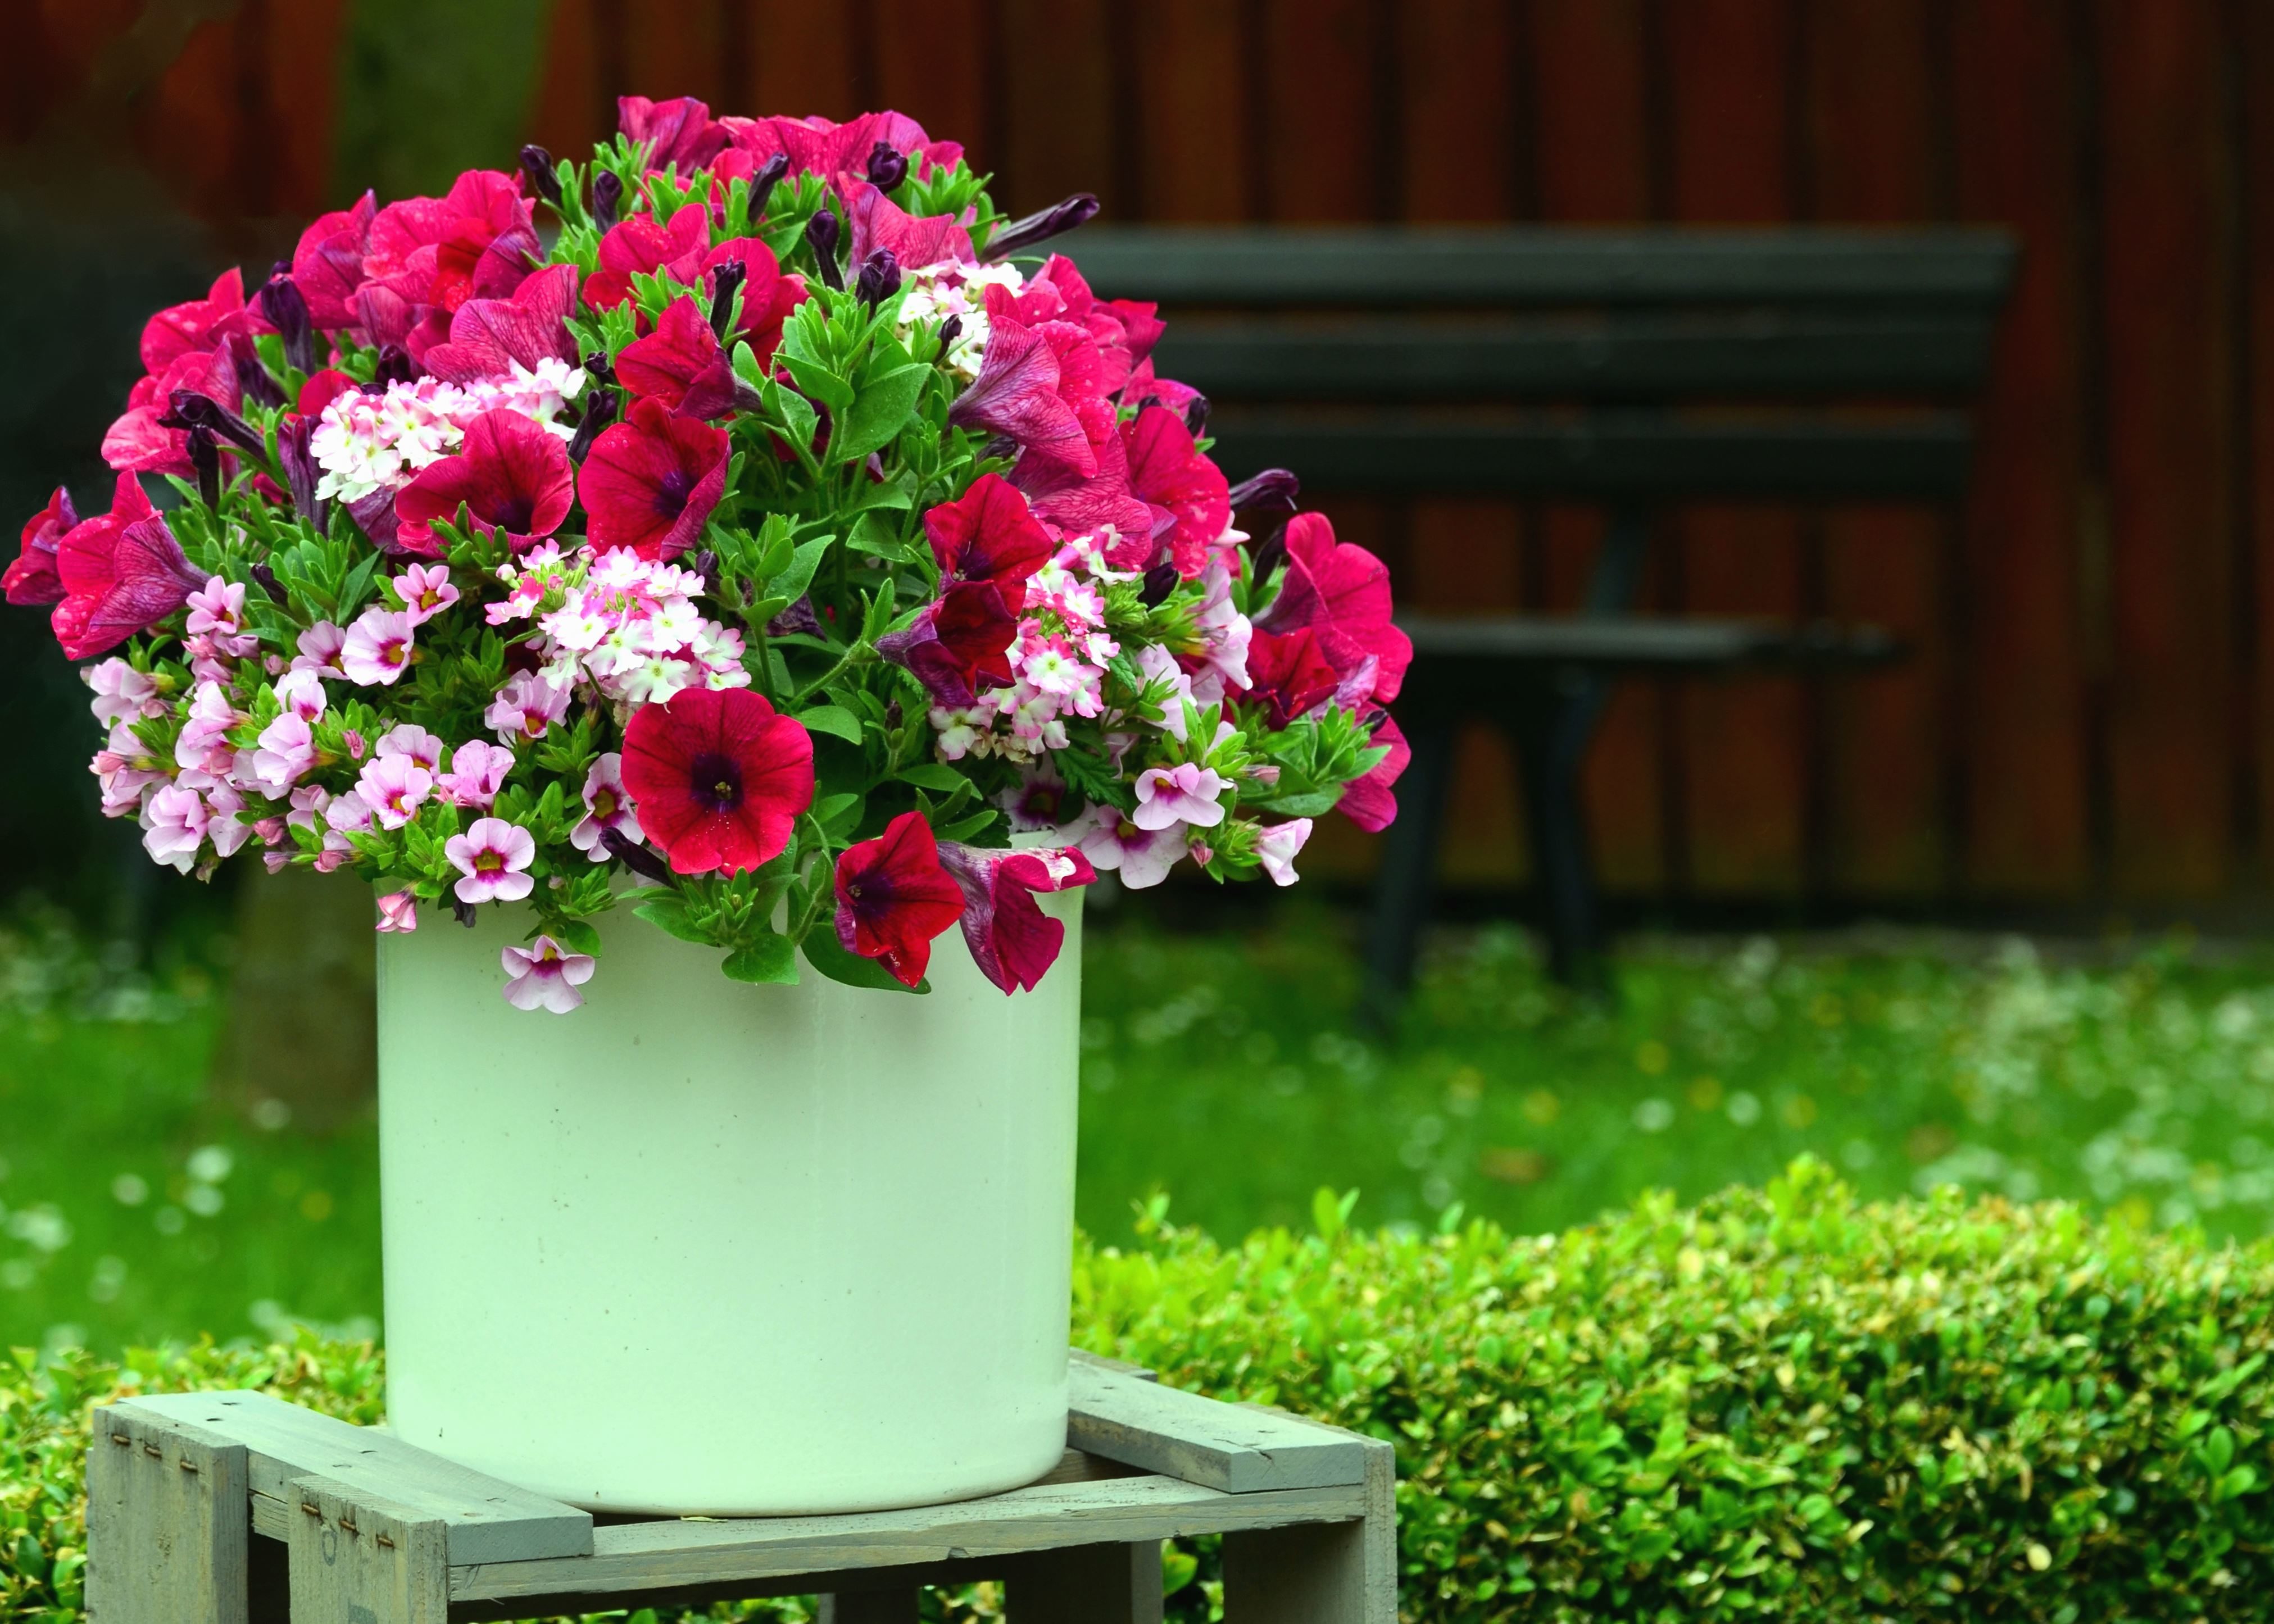 Free picture: bucket, flower, grass, bloom, bench, garden